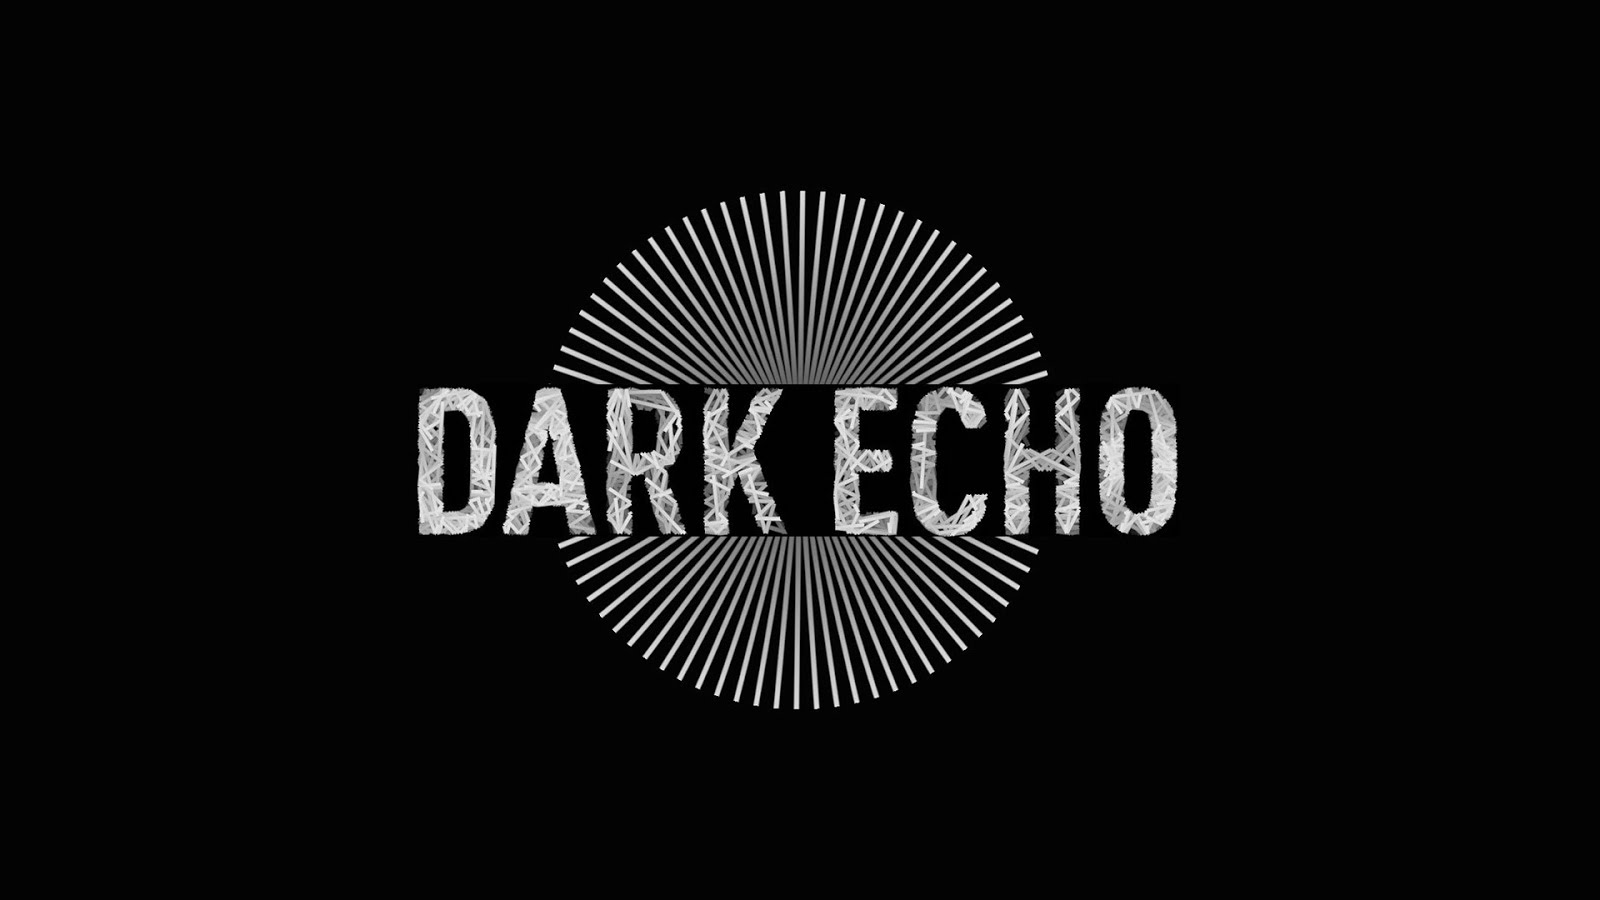 DARK ECHO